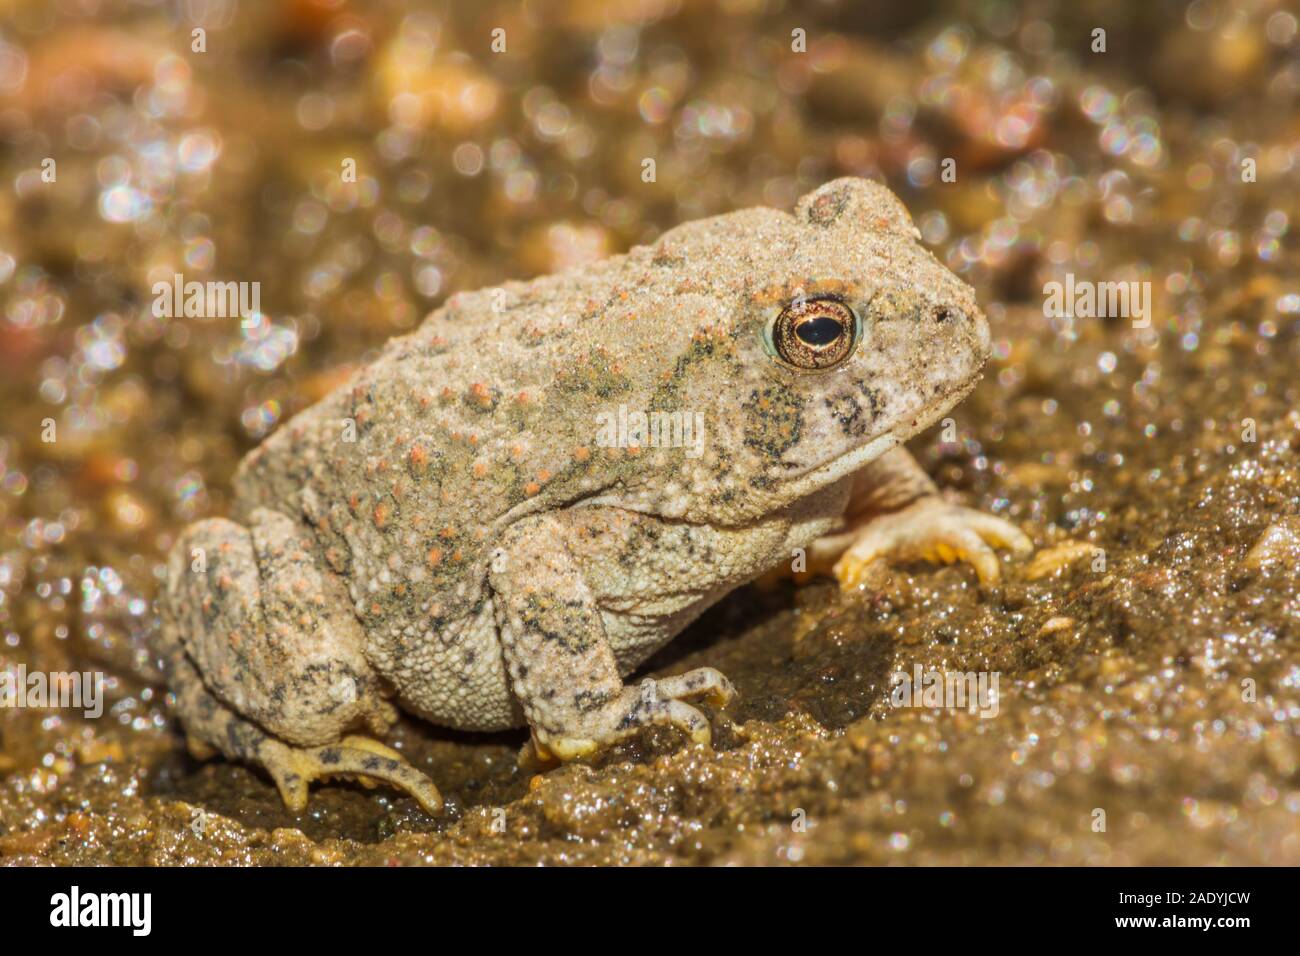 Tiny giovani Woodhouse's toad appena due pollici di lunghezza si trova in zona sabbiosa vicino oriente prugna Creek, Castle Rock Colorado US. Foto scattata in agosto. Foto Stock